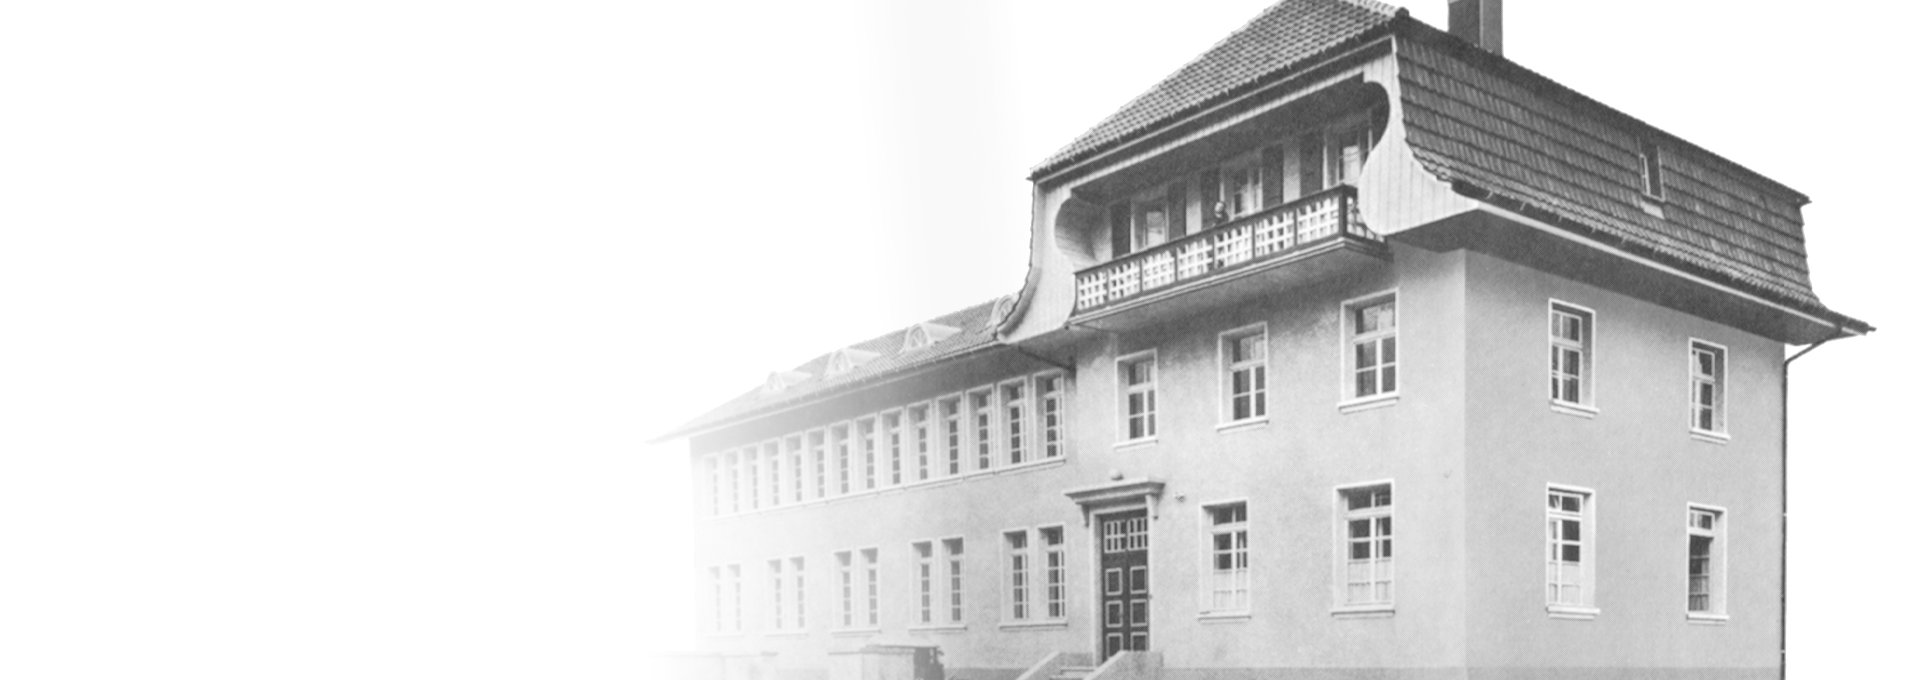 Ancienne photo en noir et blanc de la première usine de Bernafon à Flamatt, près de Berne, en Suisse, qui date de 1925.